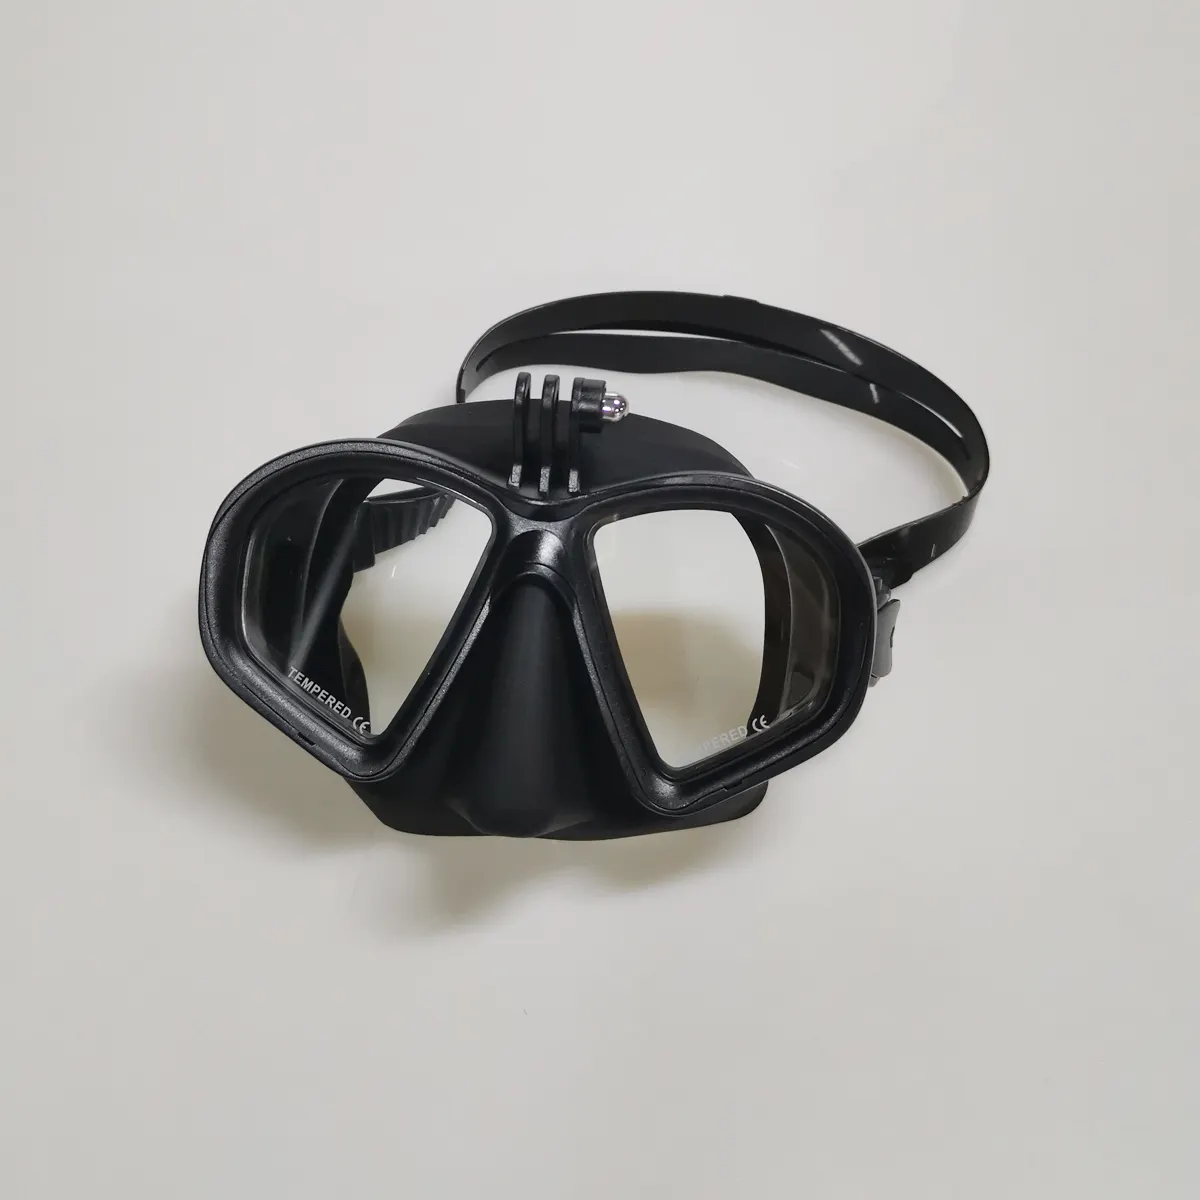 Maschera subacquea professionale di vendita calda maschera subacquea fotocamera sportiva Scuba Snorkel occhialini da nuoto per GoPro